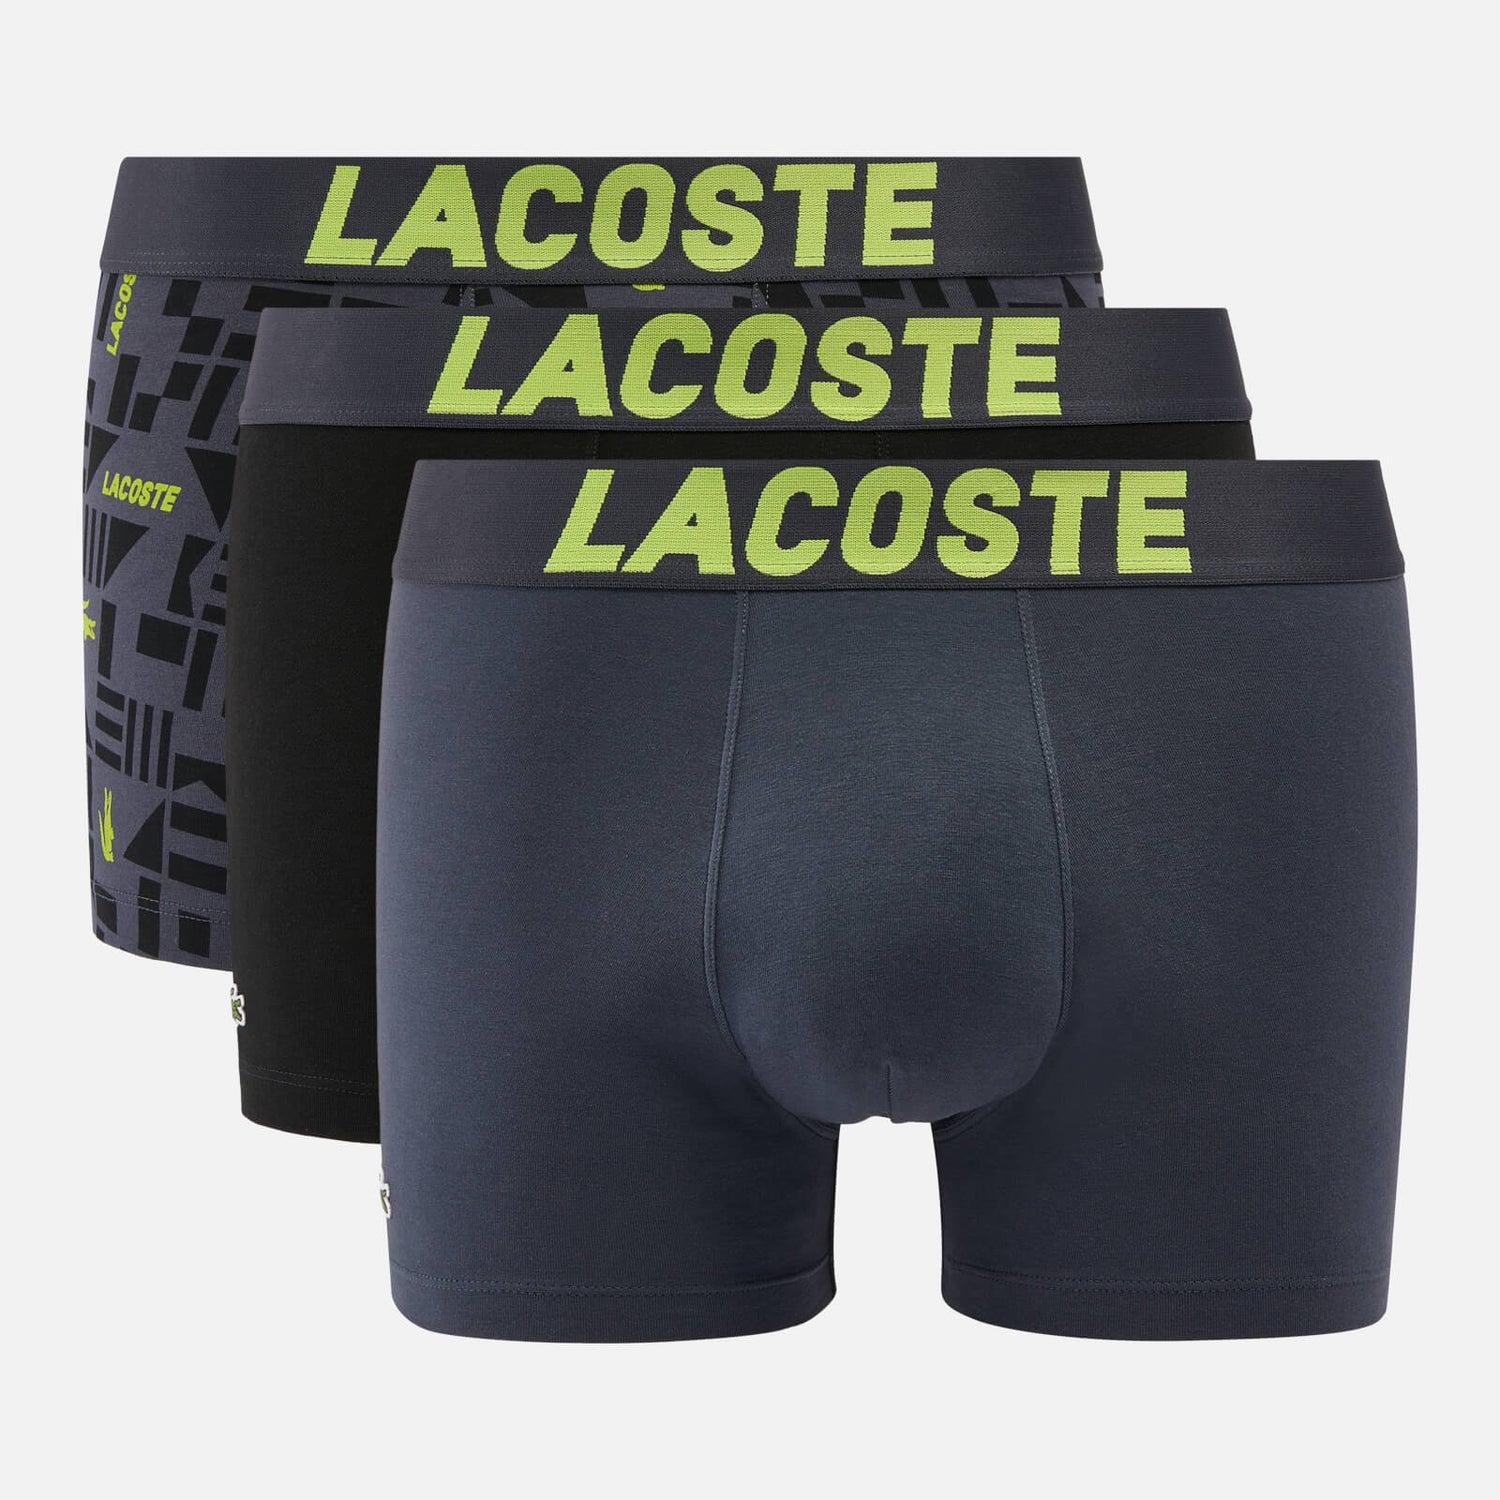 Lacoste 3-Pack Neon Print Cotton-Blend Boxer Shorts